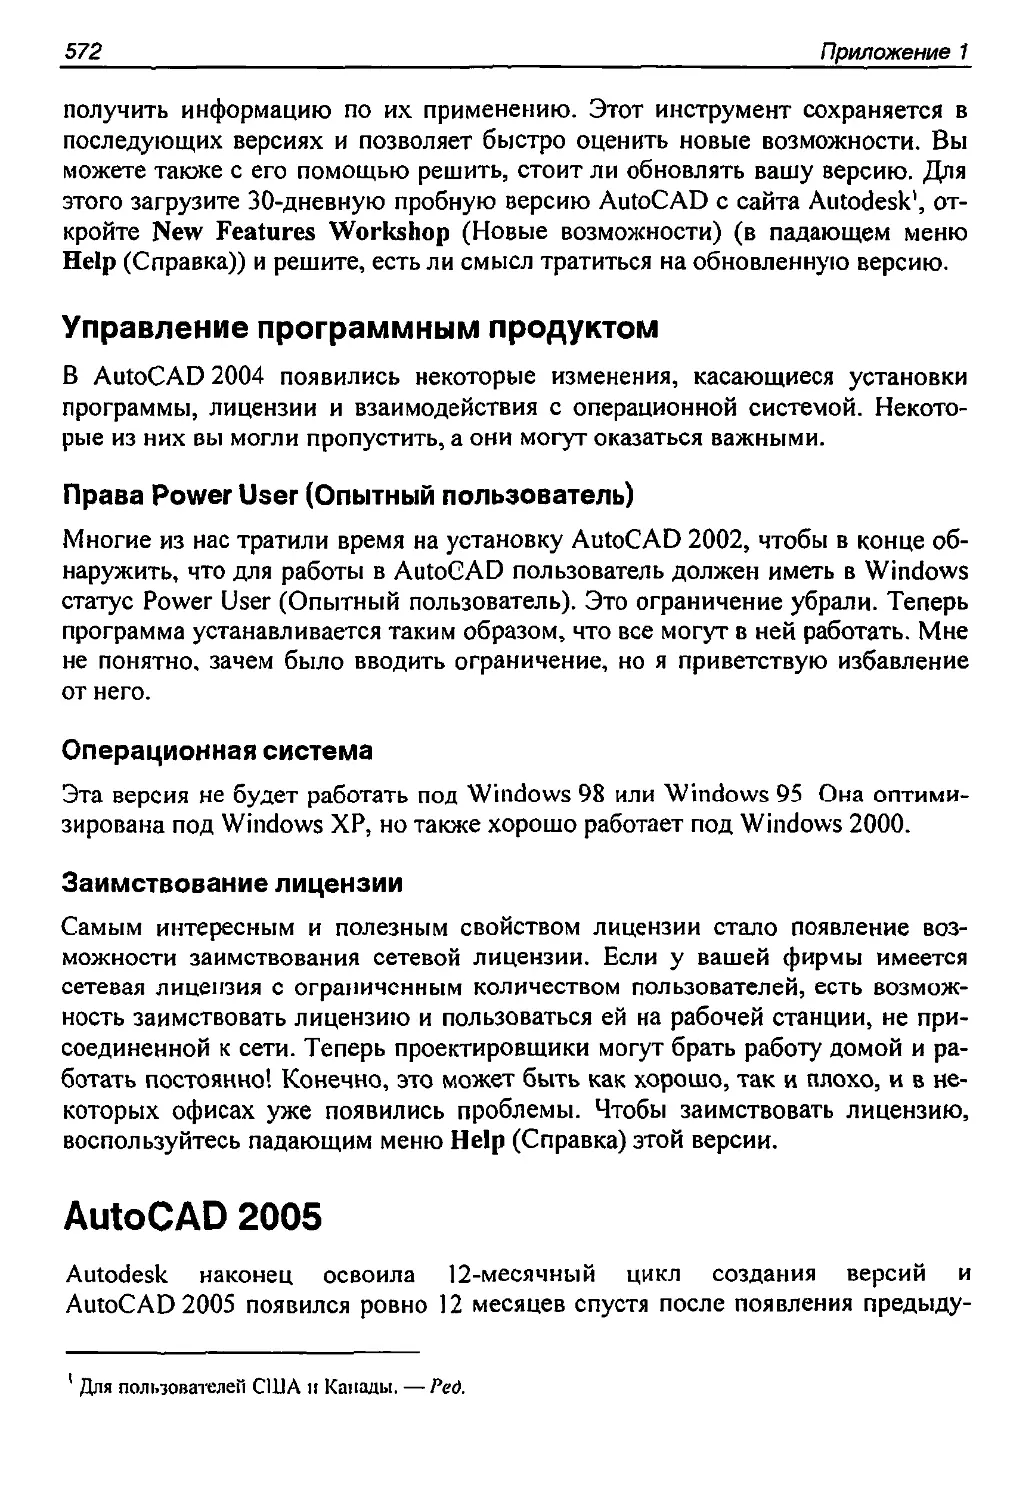 Управление программным продуктом
AutoCAD 2005